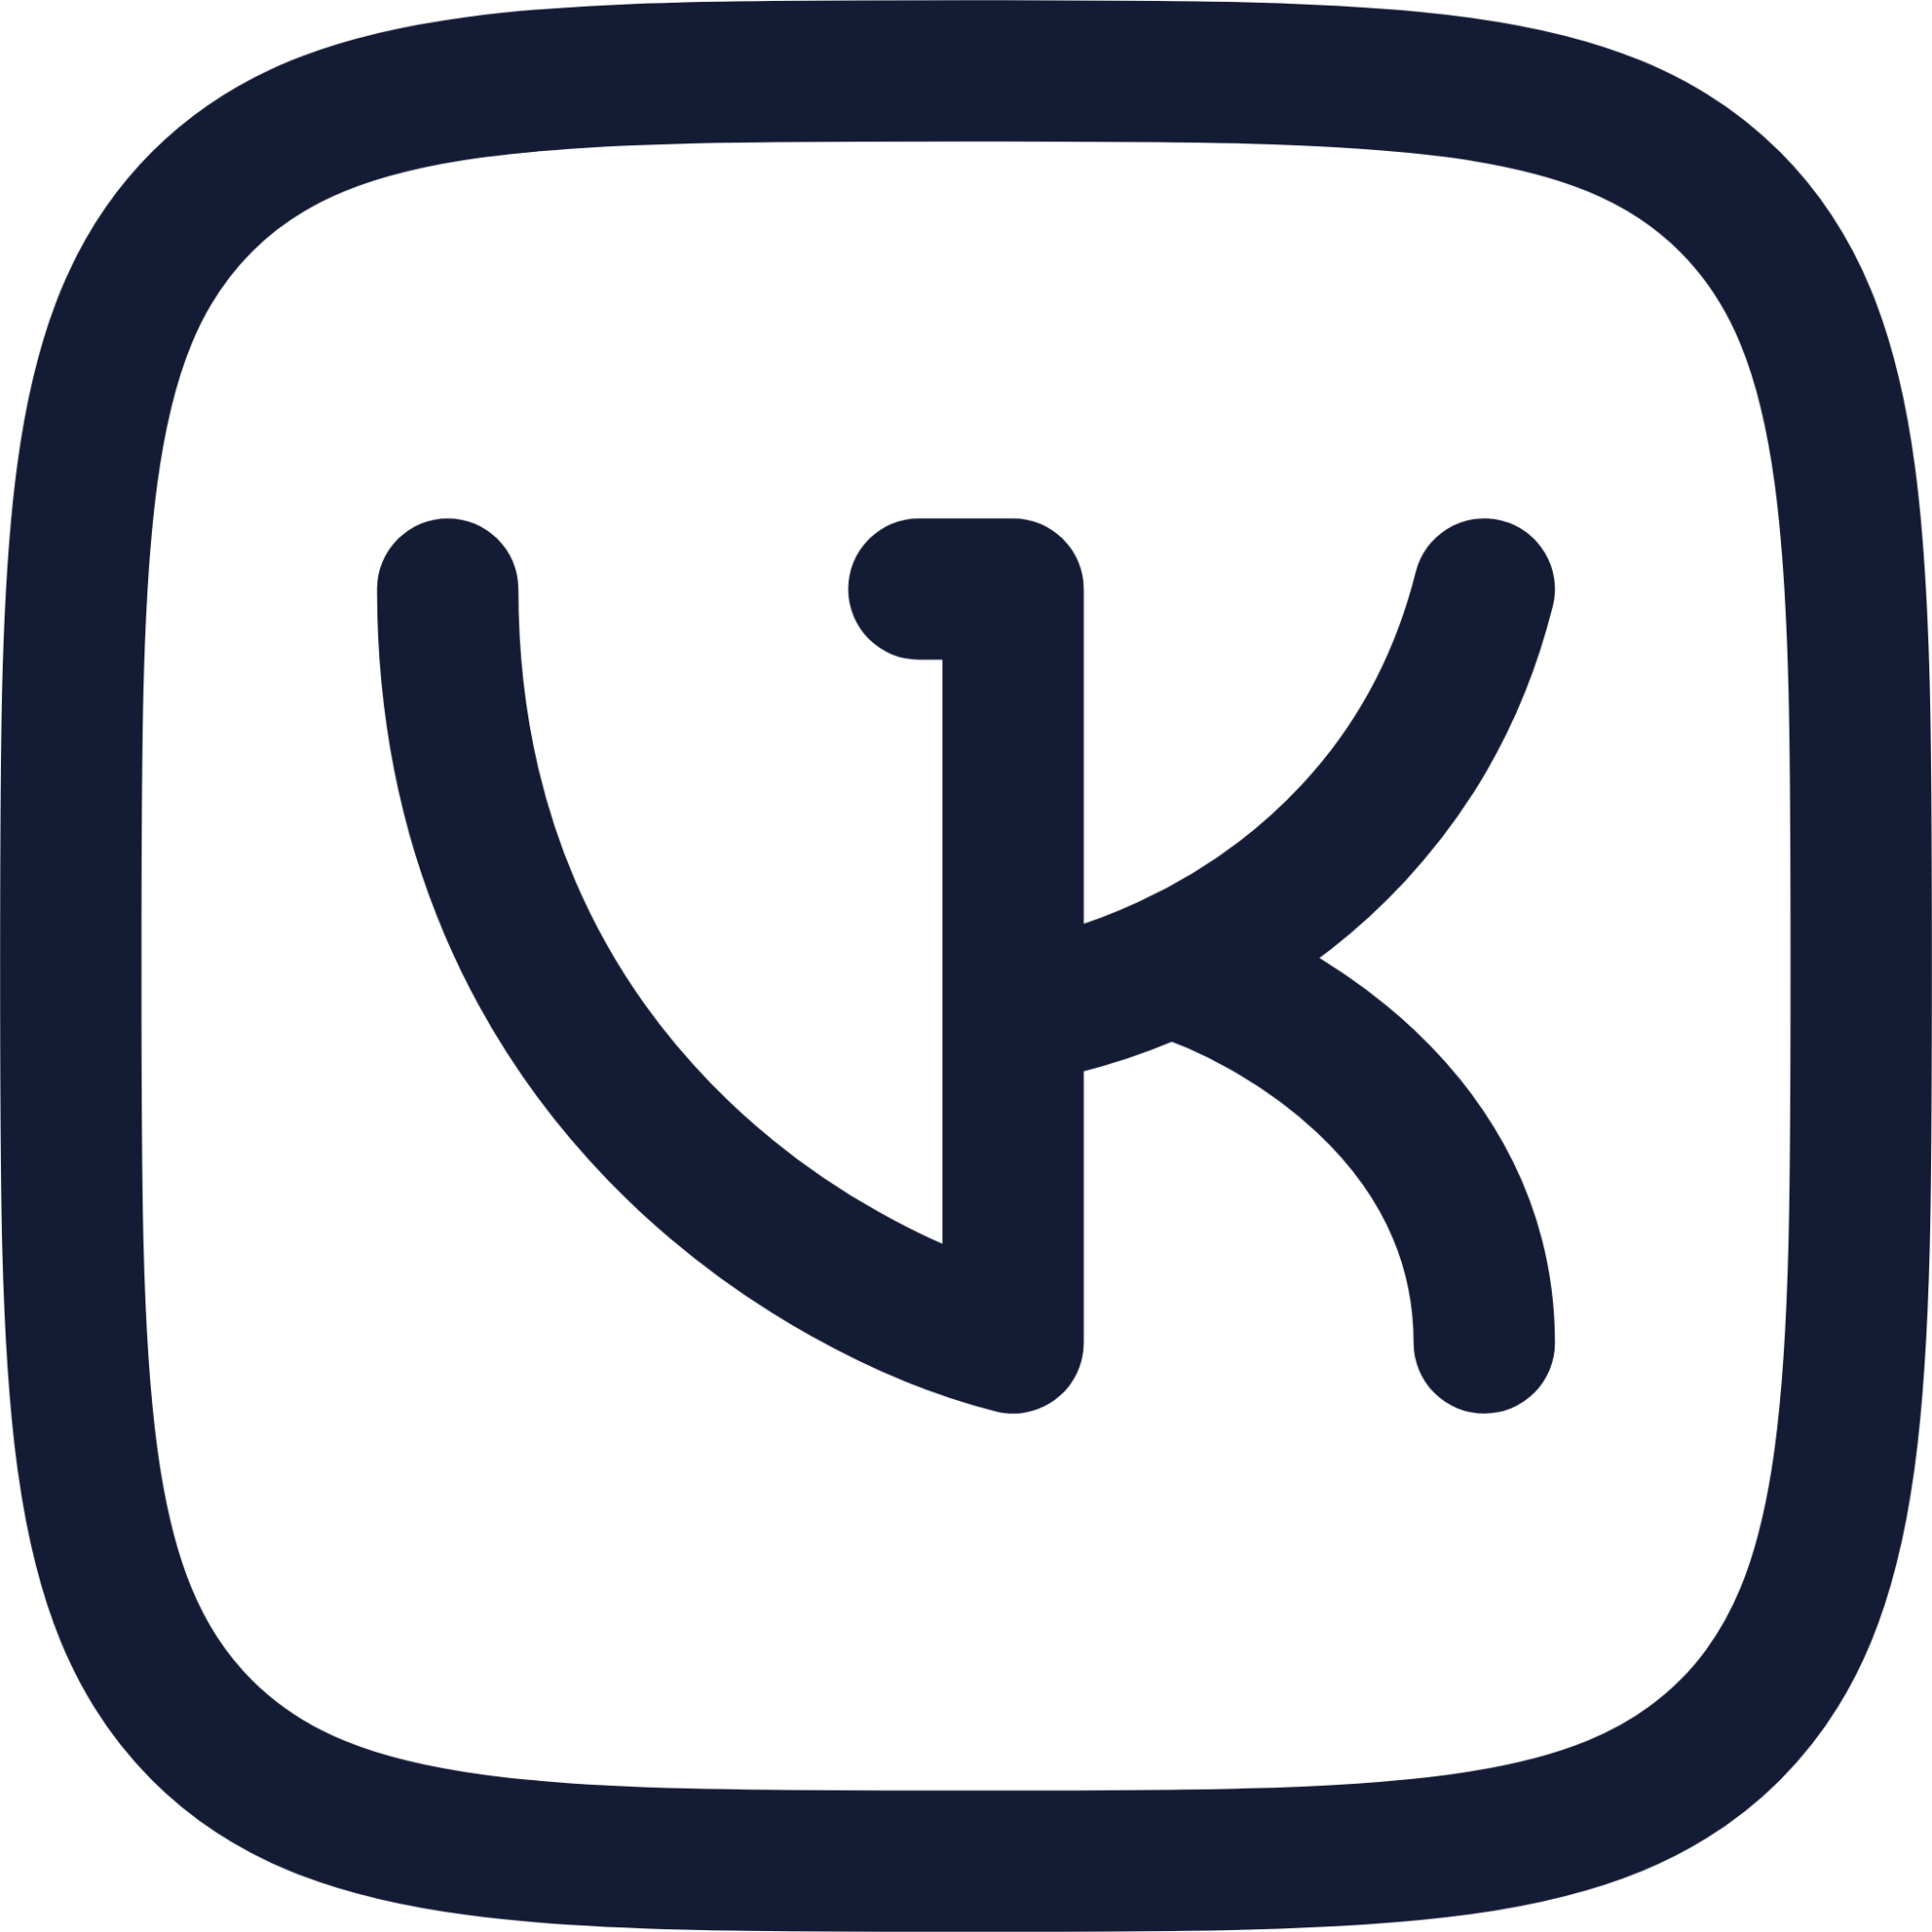 vk square icon